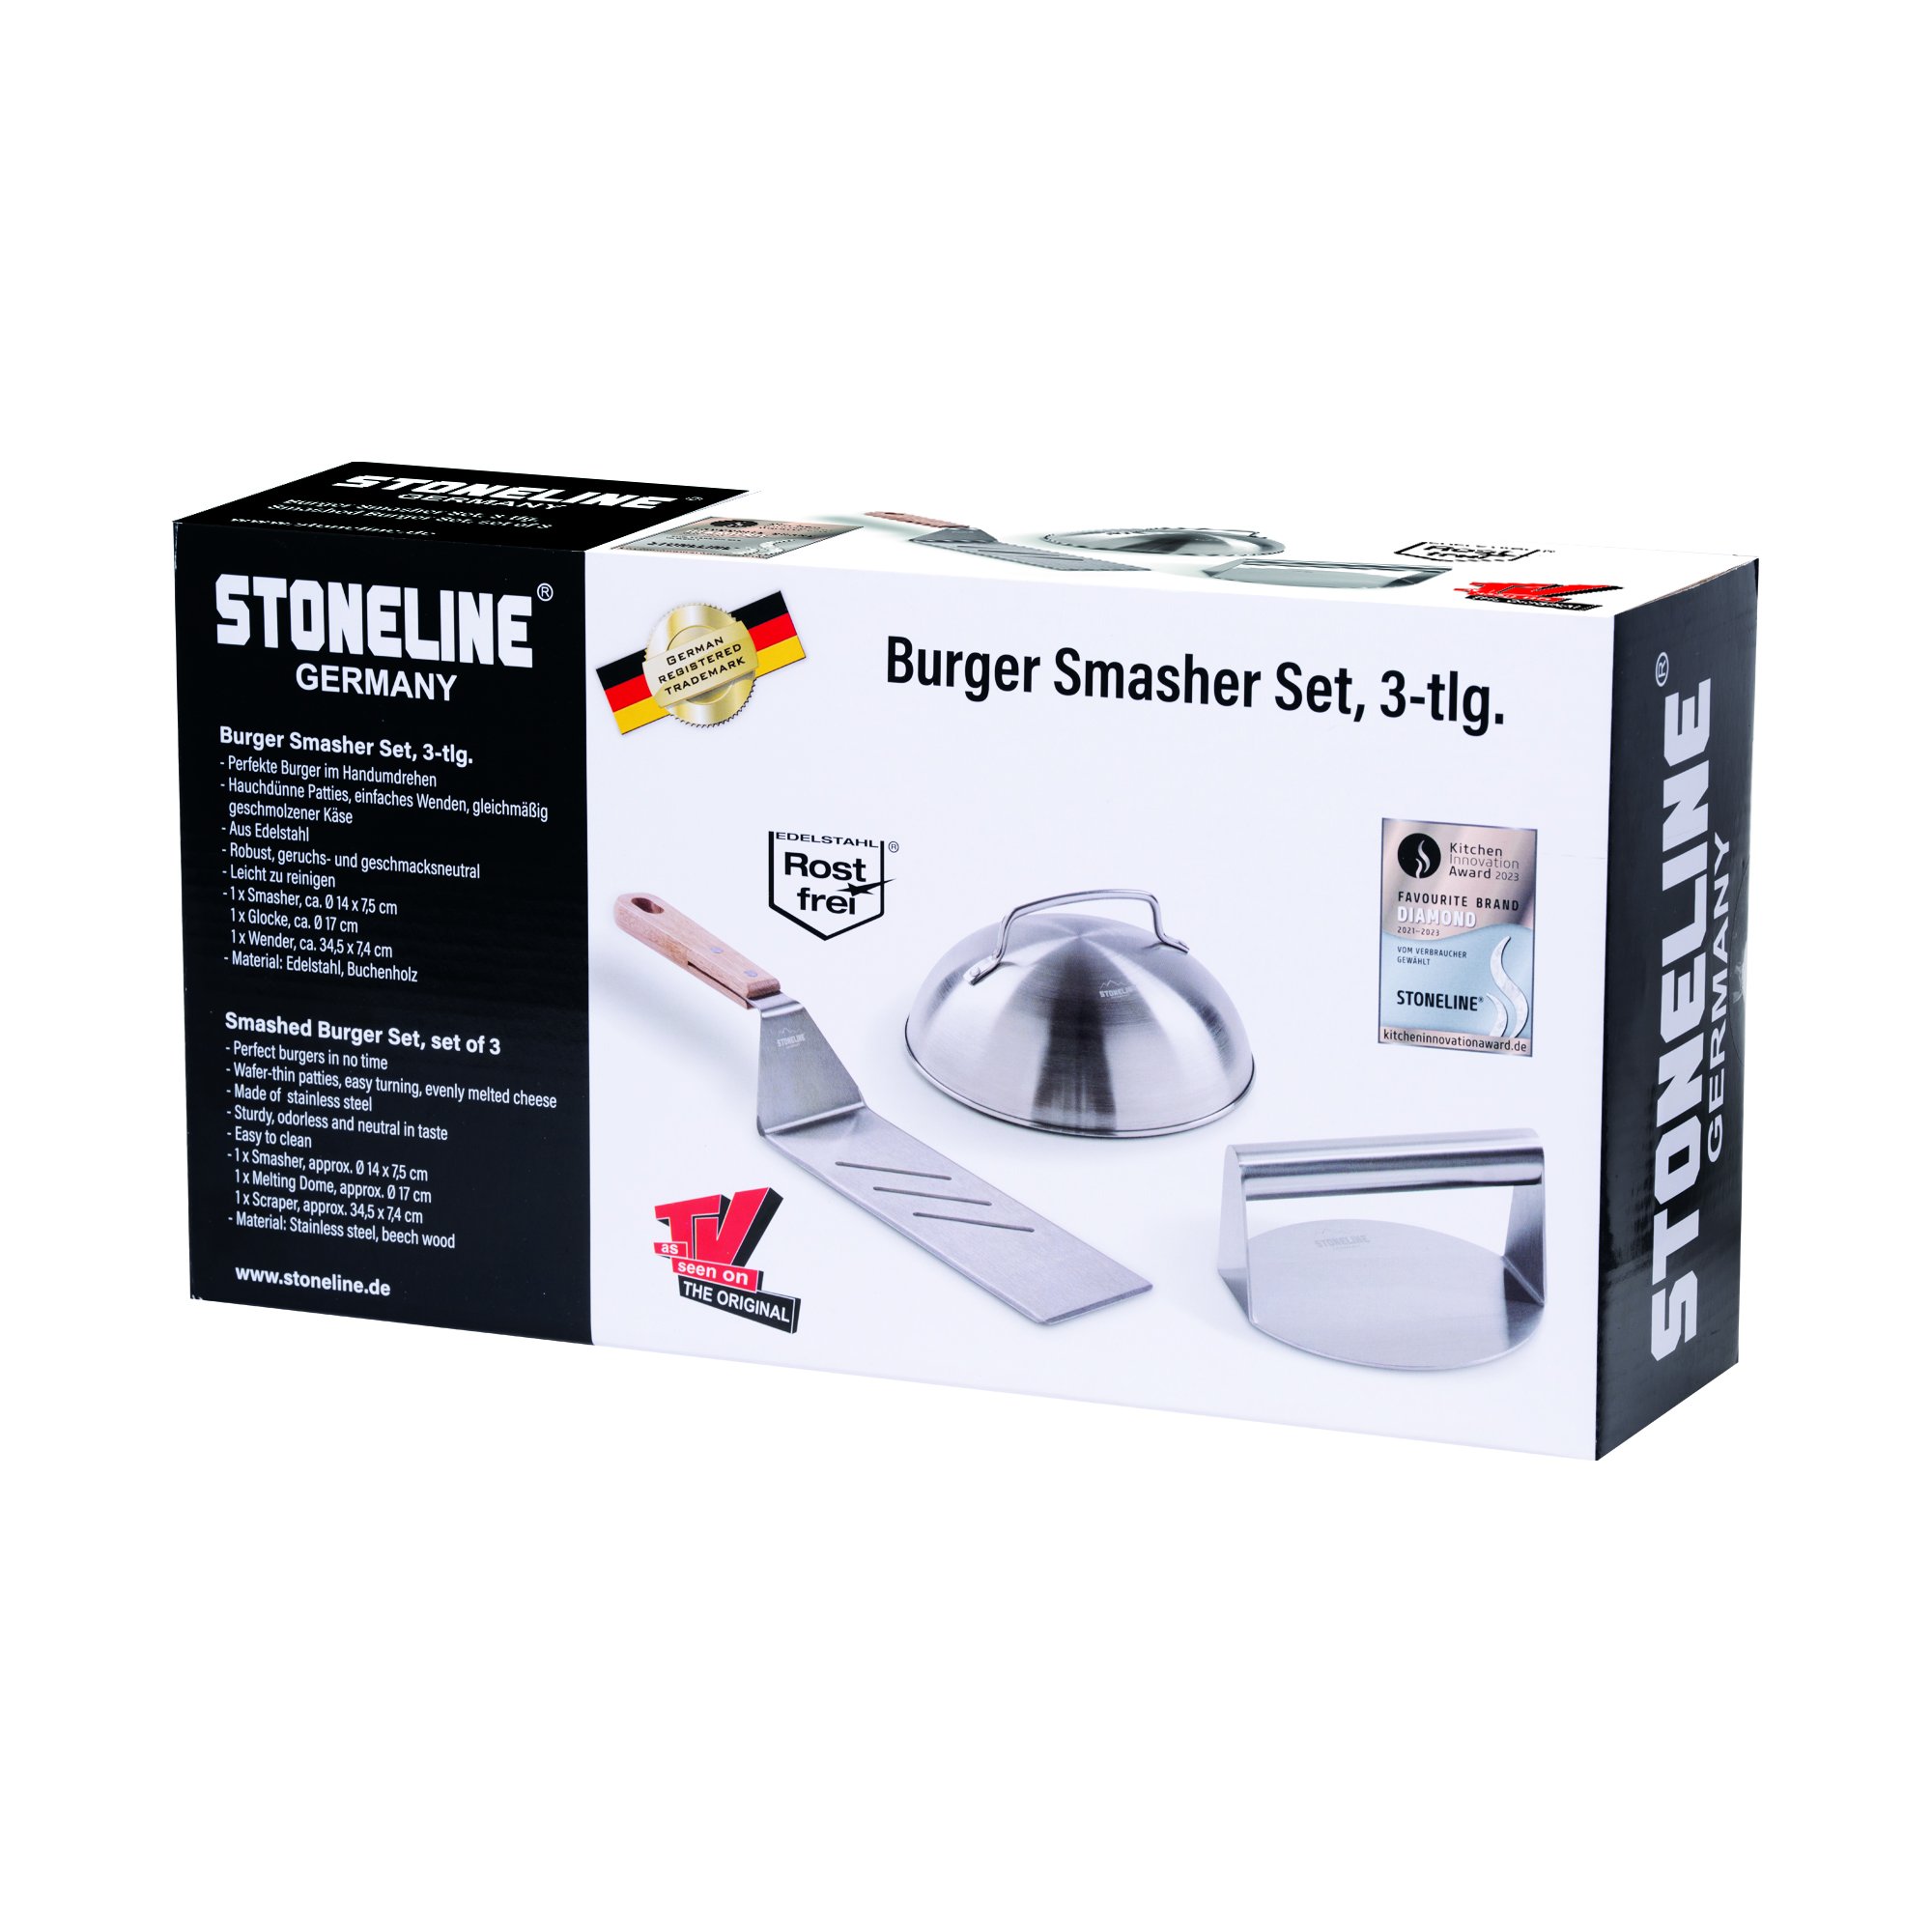 STONELINE® Burger Smasher Set, 3-tlg., inkl. Burgerglocke, Wender und Burger Smasher